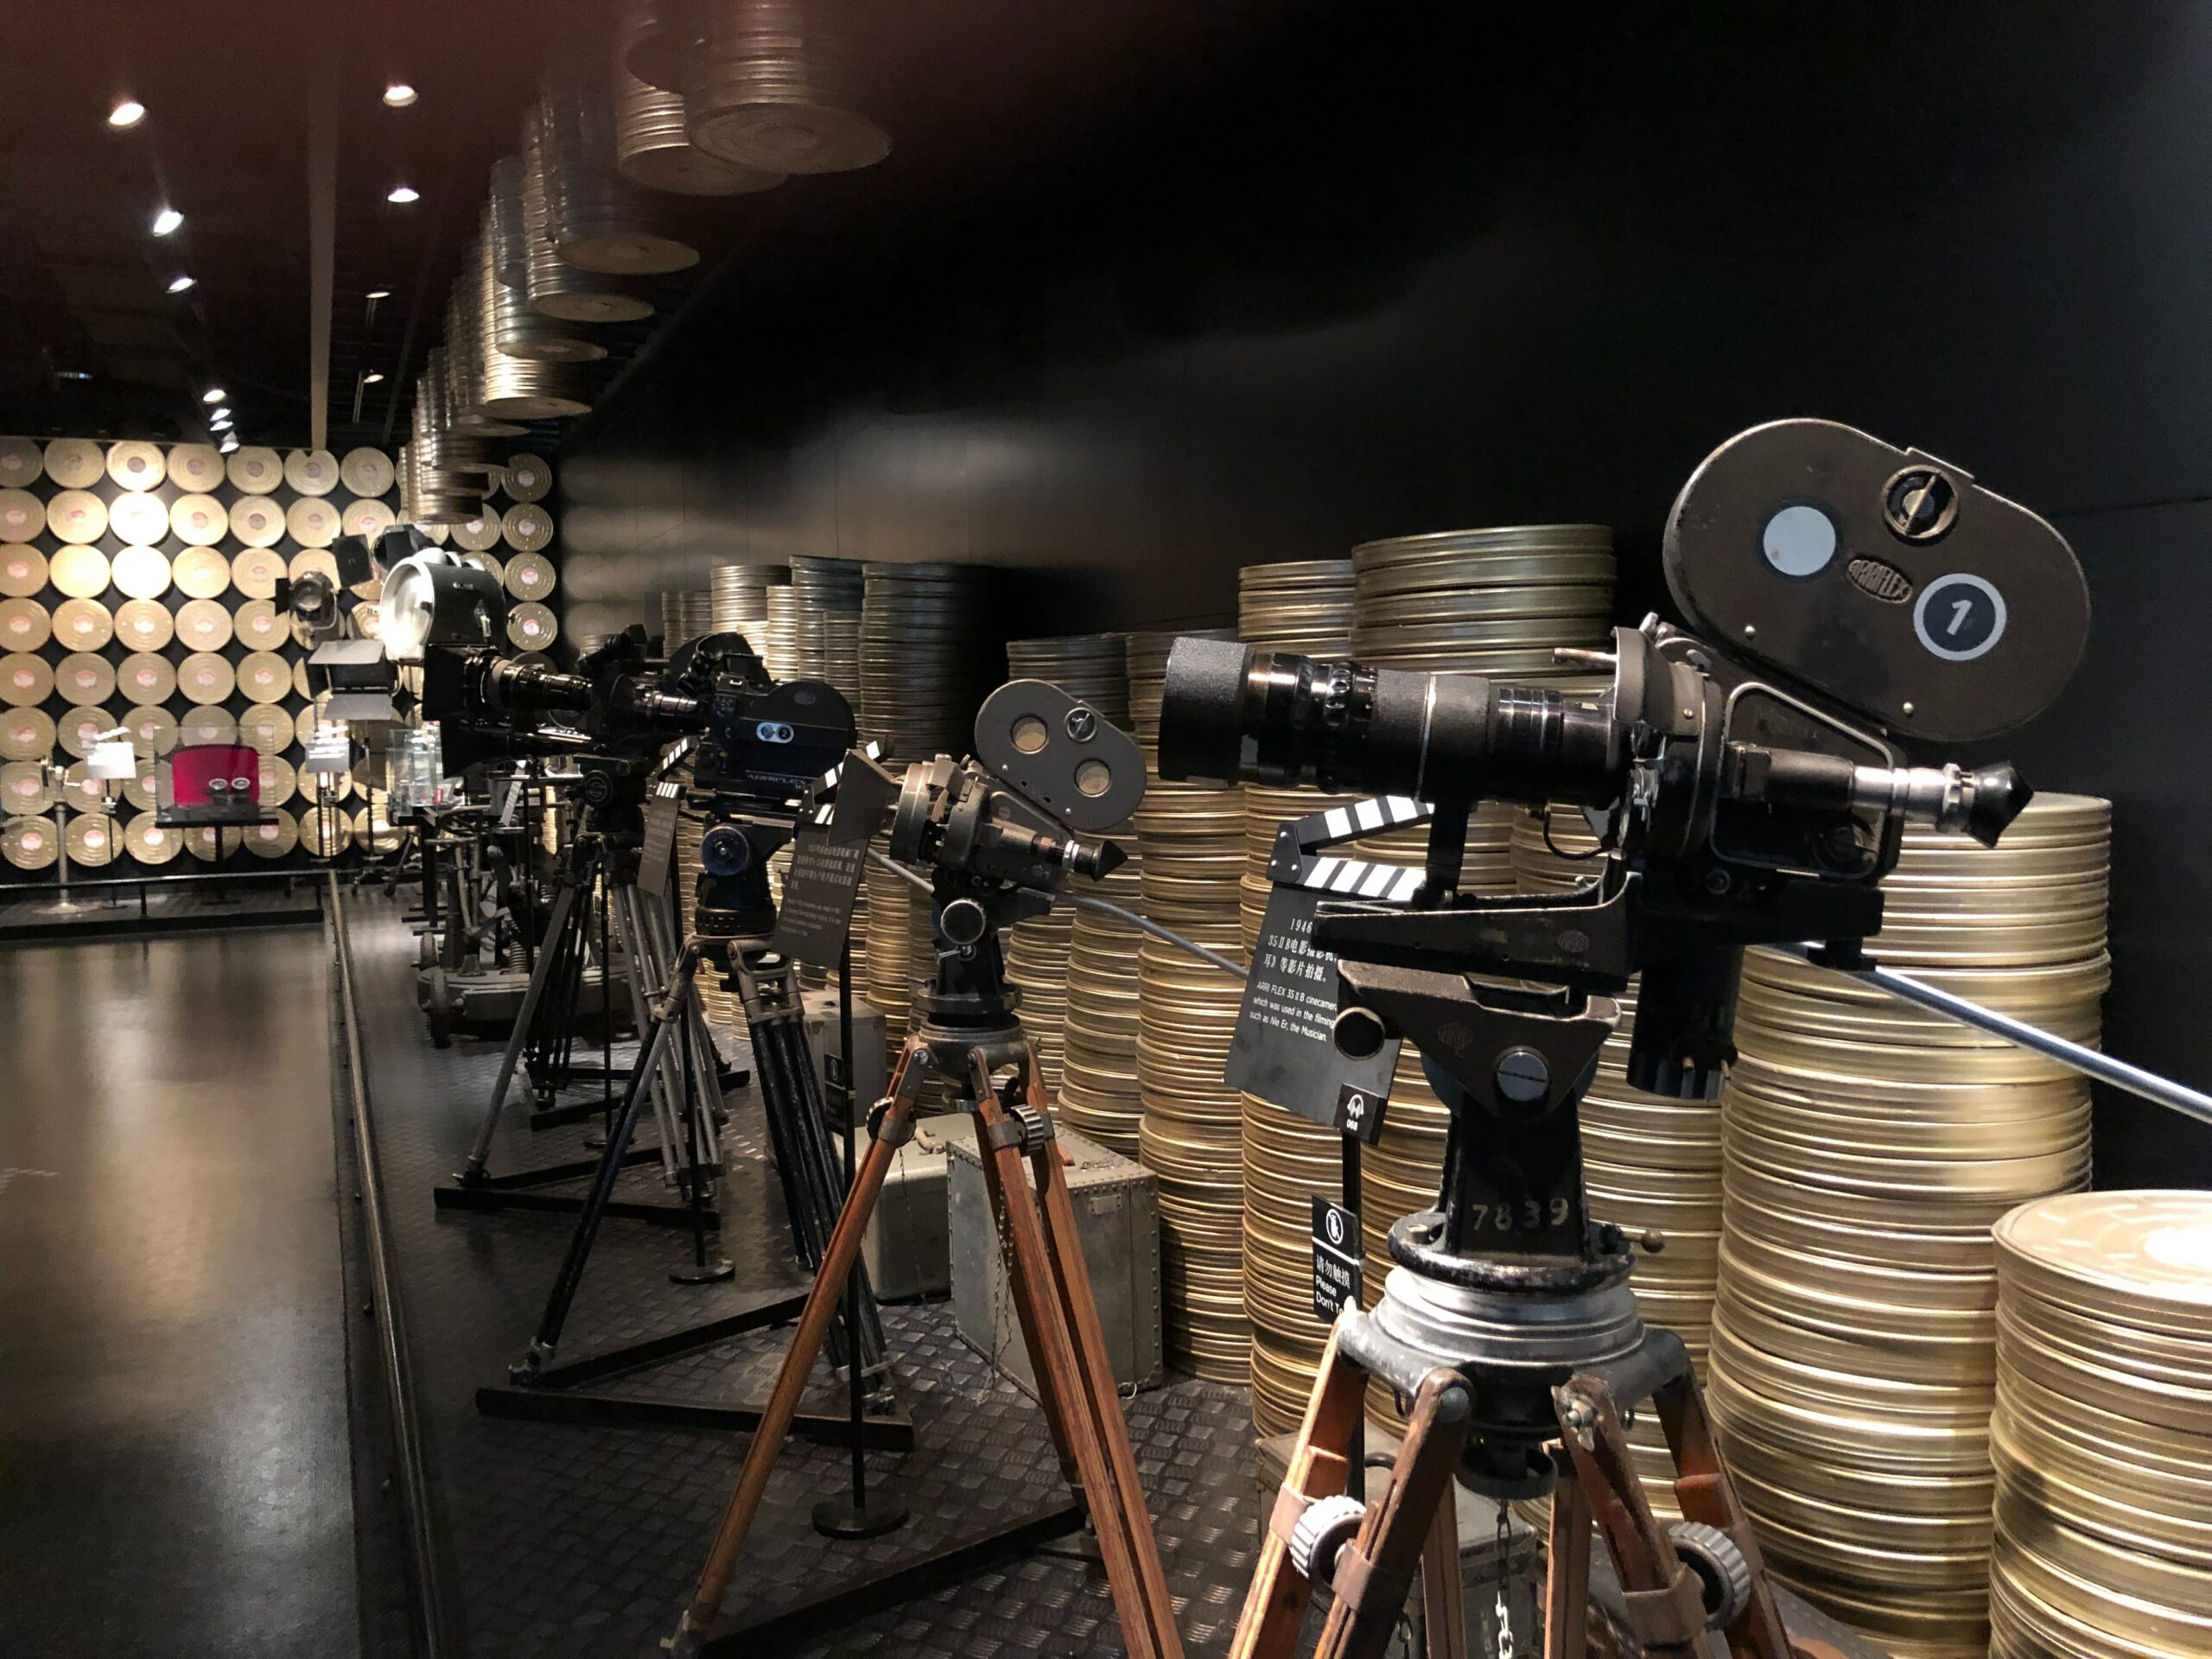 Musei cinematografici: una visione futuristica tra arte e film?